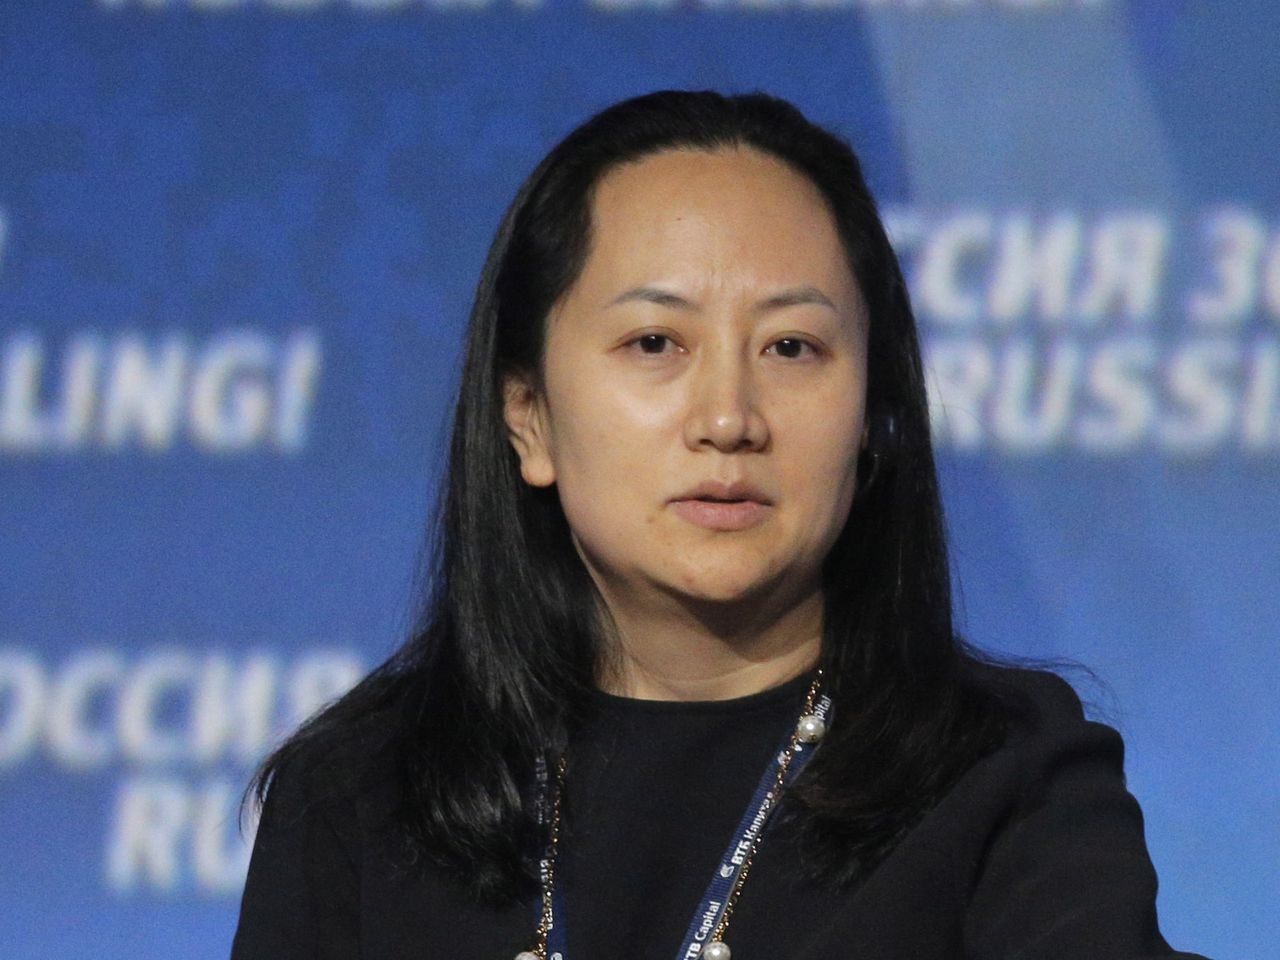 Canada arresteert op verzoek VS financiële topvrouw Huawei 